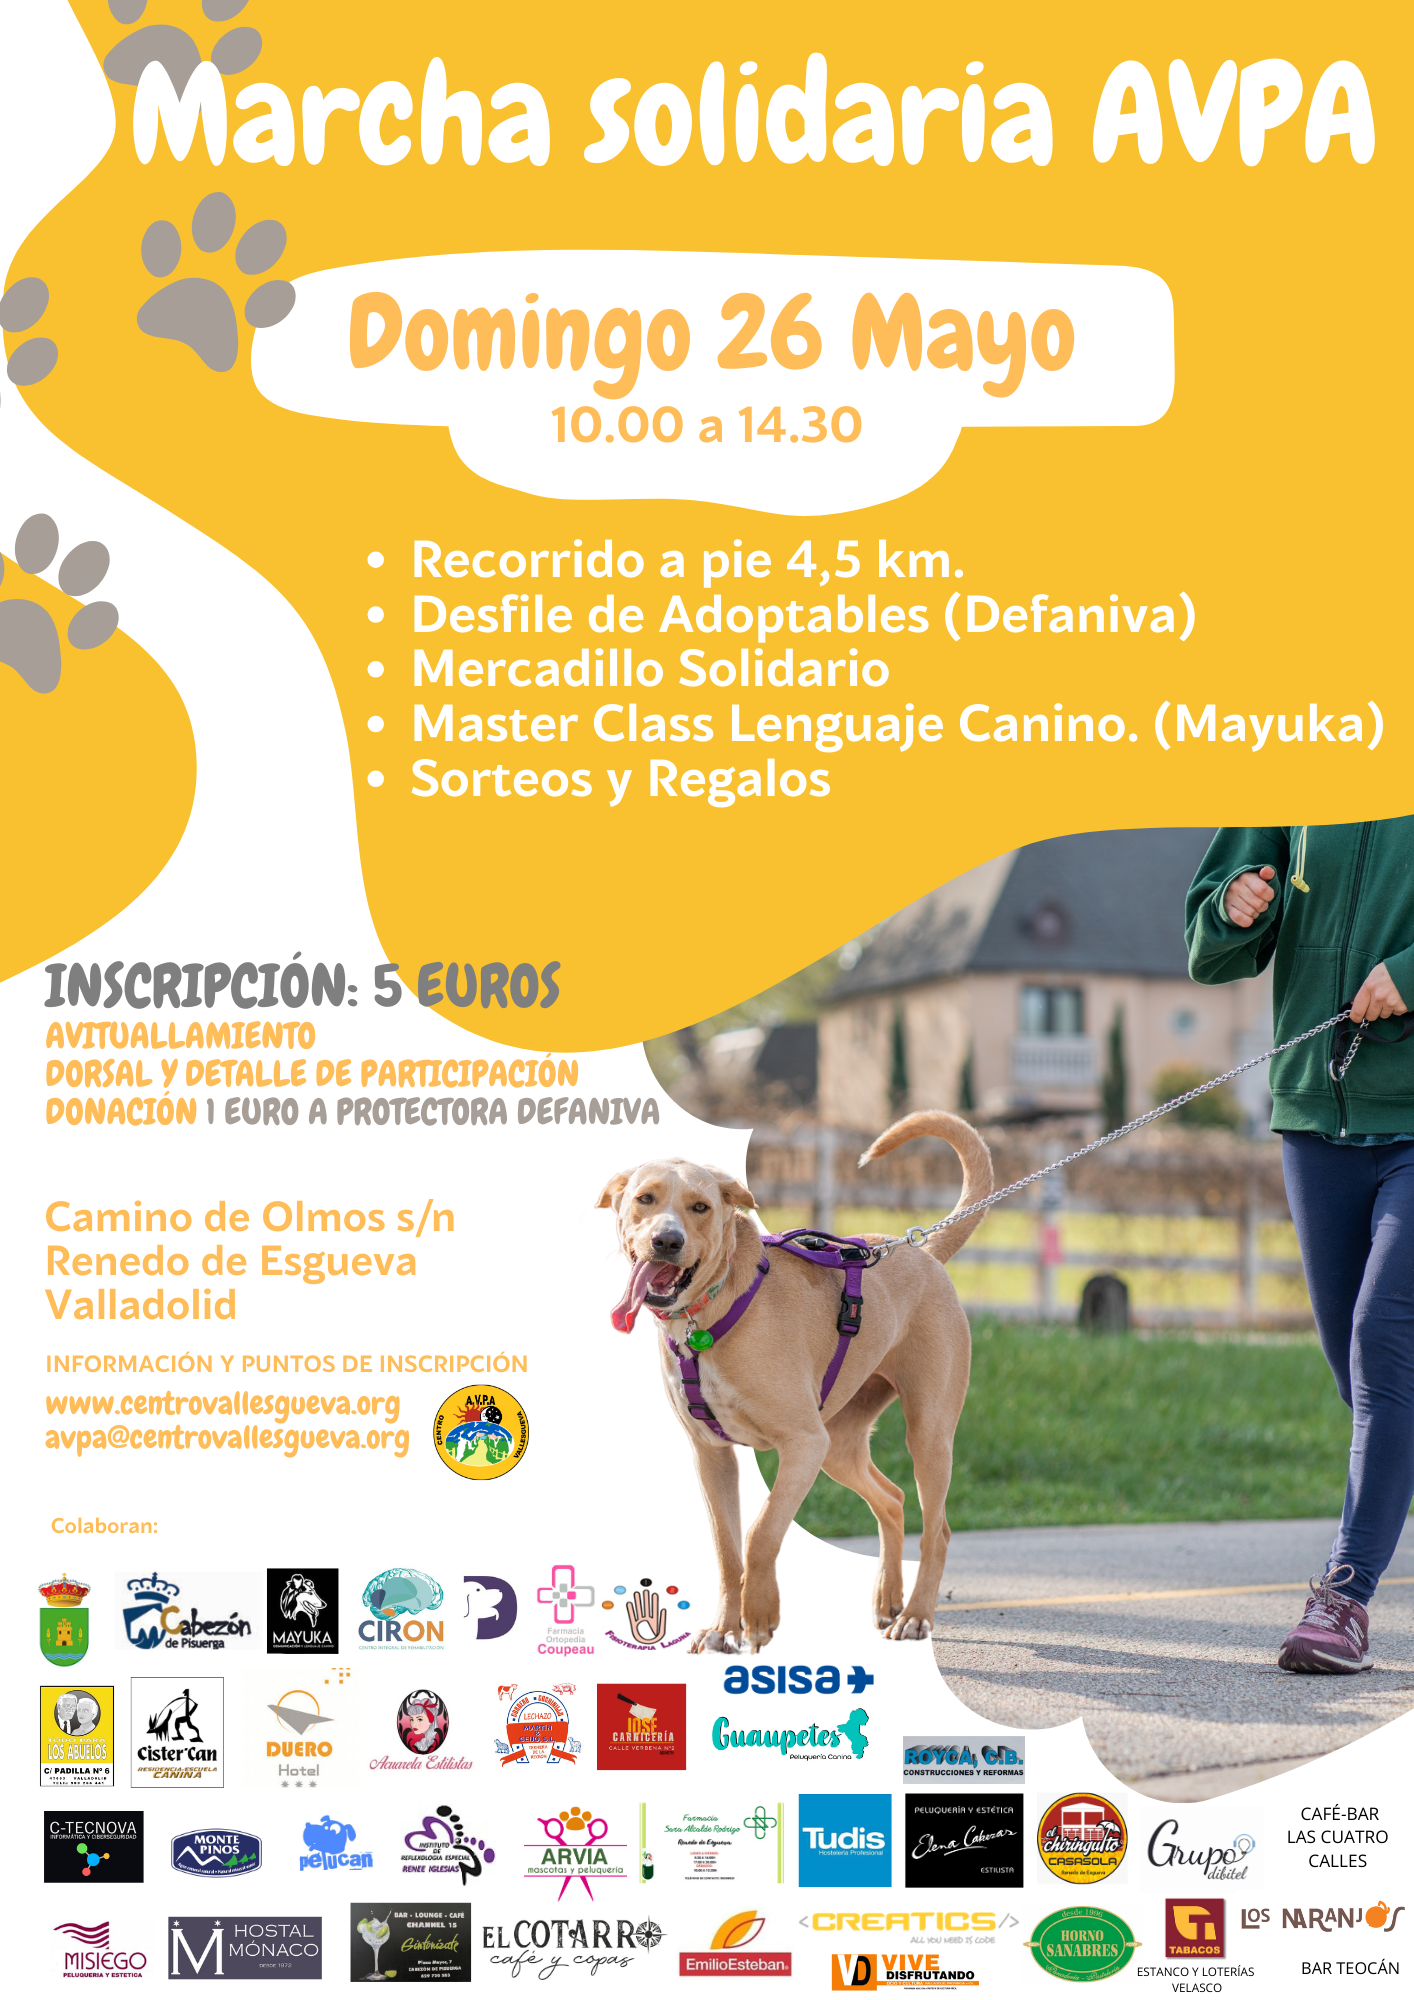 Marcha Solidaria AVPA Valladolid con y sin perros